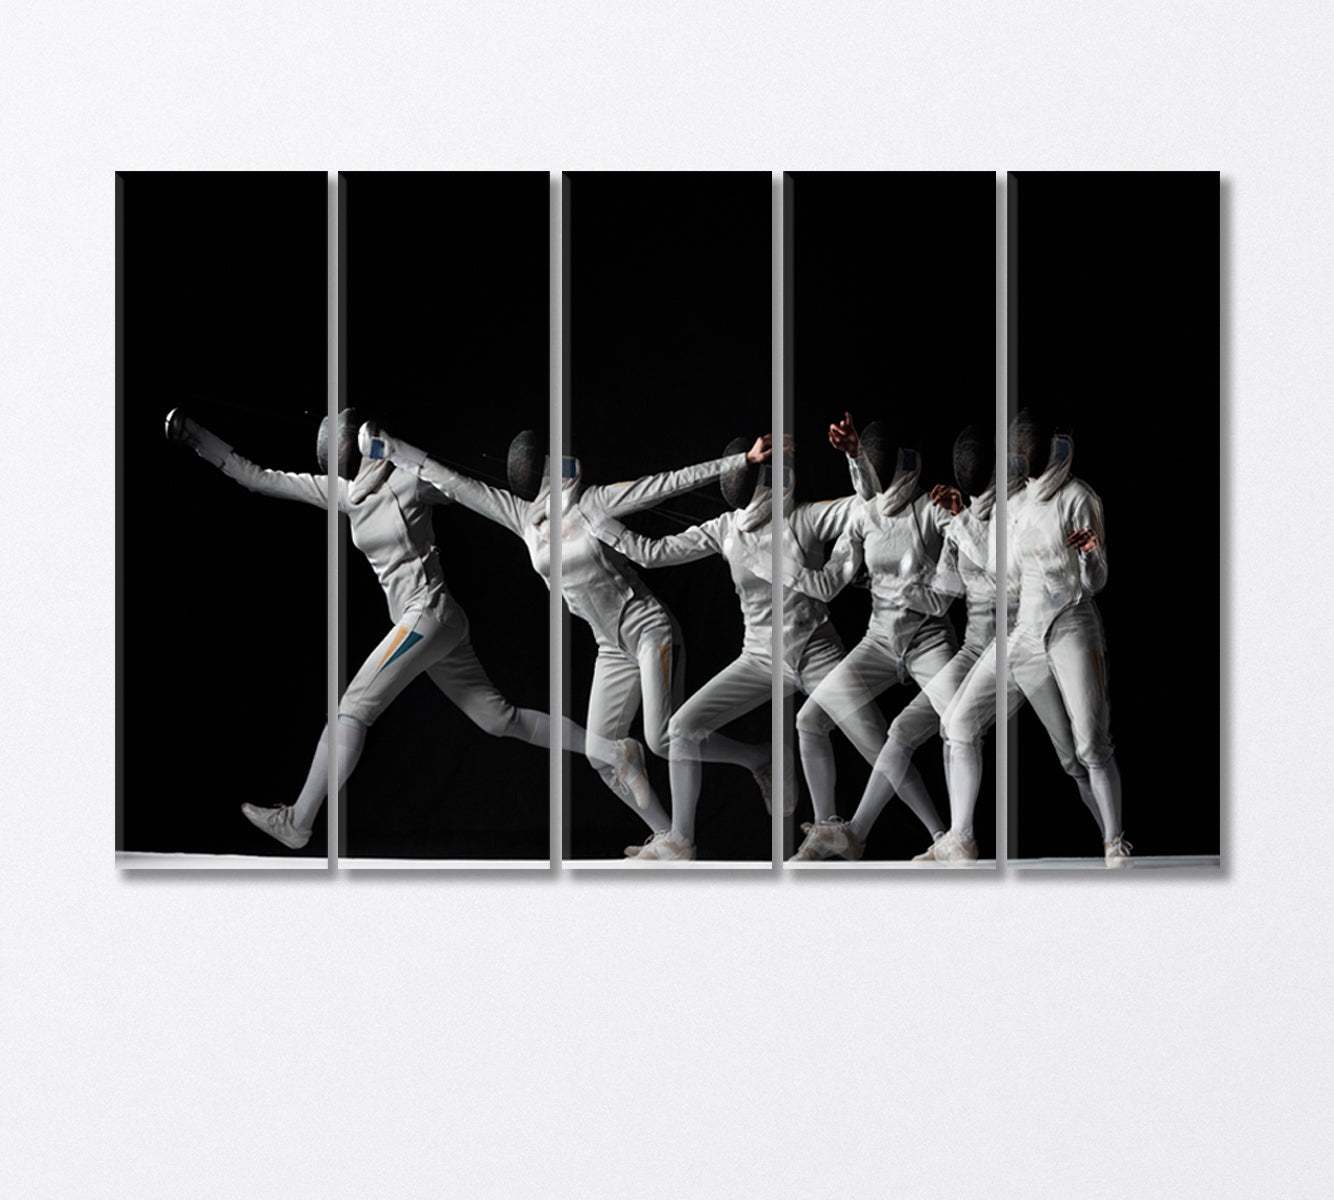 Fencing Process Canvas Print-Canvas Print-CetArt-5 Panels-36x24 inches-CetArt